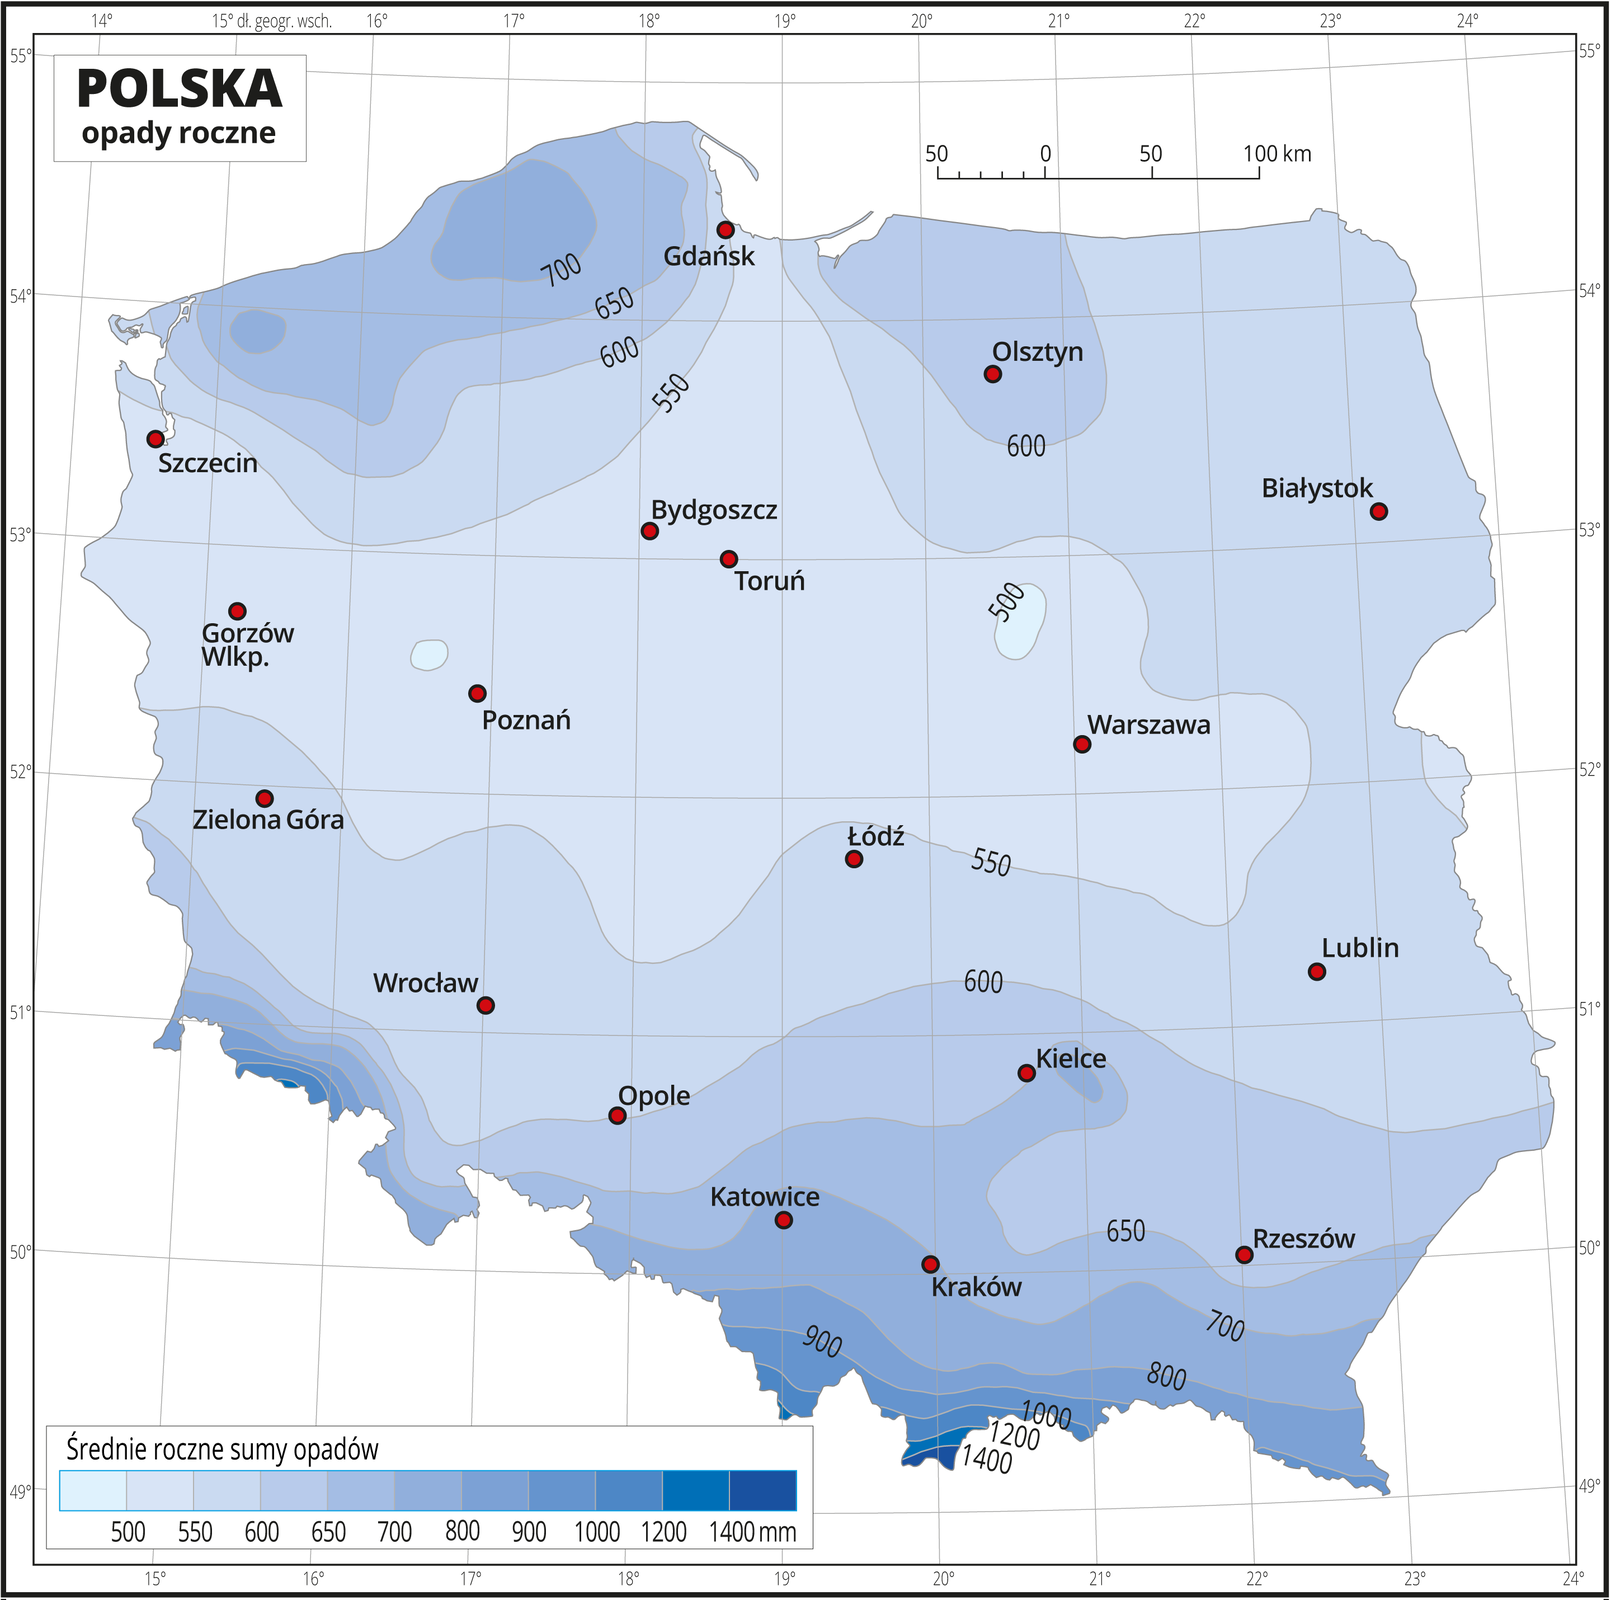 Ilustracja przedstawia mapę Polski. Na mapie odcieniami koloru niebieskiego zaznaczono średnie roczne sumy opadów. Na izohietach opisano średnie roczne sumy opadów. Centralną część mapy zajmuje kolor jasnoniebieski przechodzący w ciemnoniebieski w kierunku północnym i południowym. Najciemniejszy niebieski jest na południu. Czerwonymi punktami zaznaczono miasta wojewódzkie. Mapa pokryta jest siatką równoleżników i południków. Dookoła mapy jest biała ramka, w której opisane są współrzędne geograficzne co jeden stopień. Poniżej mapy w legendzie umieszczono prostokątny poziomy pasek. Pasek podzielono na jedenaście części od jasnoniebieskich do ciemnoniebieskiego. Każda część paska obrazuje przedział średniej rocznej sumy opadów. Opisano izohiety od pięćset milimetrów do tysiąc czterysta milimetrów, początkowo co pięćdziesiąt milimetrów, powyżej siedemset milimetrów co sto milimetrów, a powyżej tysiąca milimetrów co dwieście milimetrów.